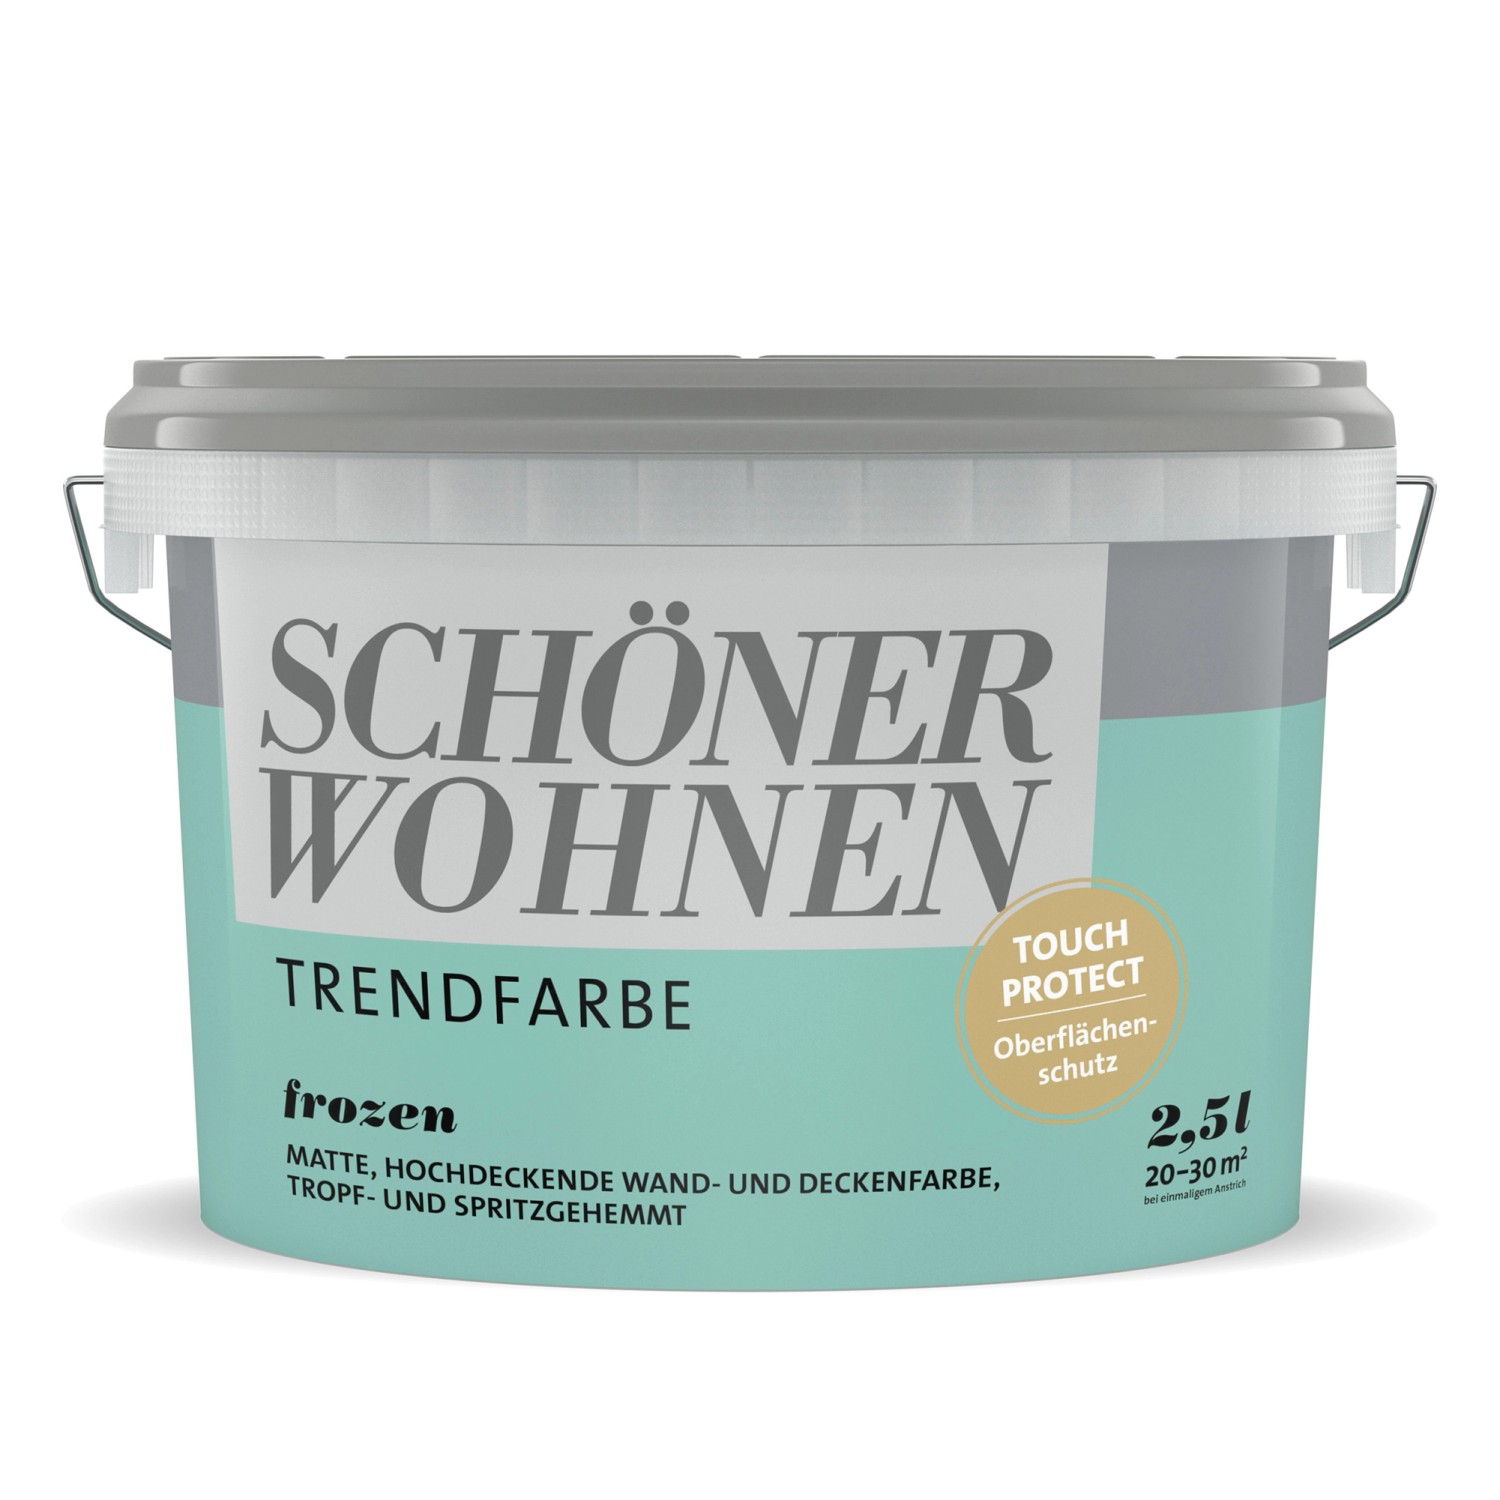 Schöner Wohnen Trendfarbe Frozen matt 2,5 l von SCHÖNER WOHNEN-Farbe